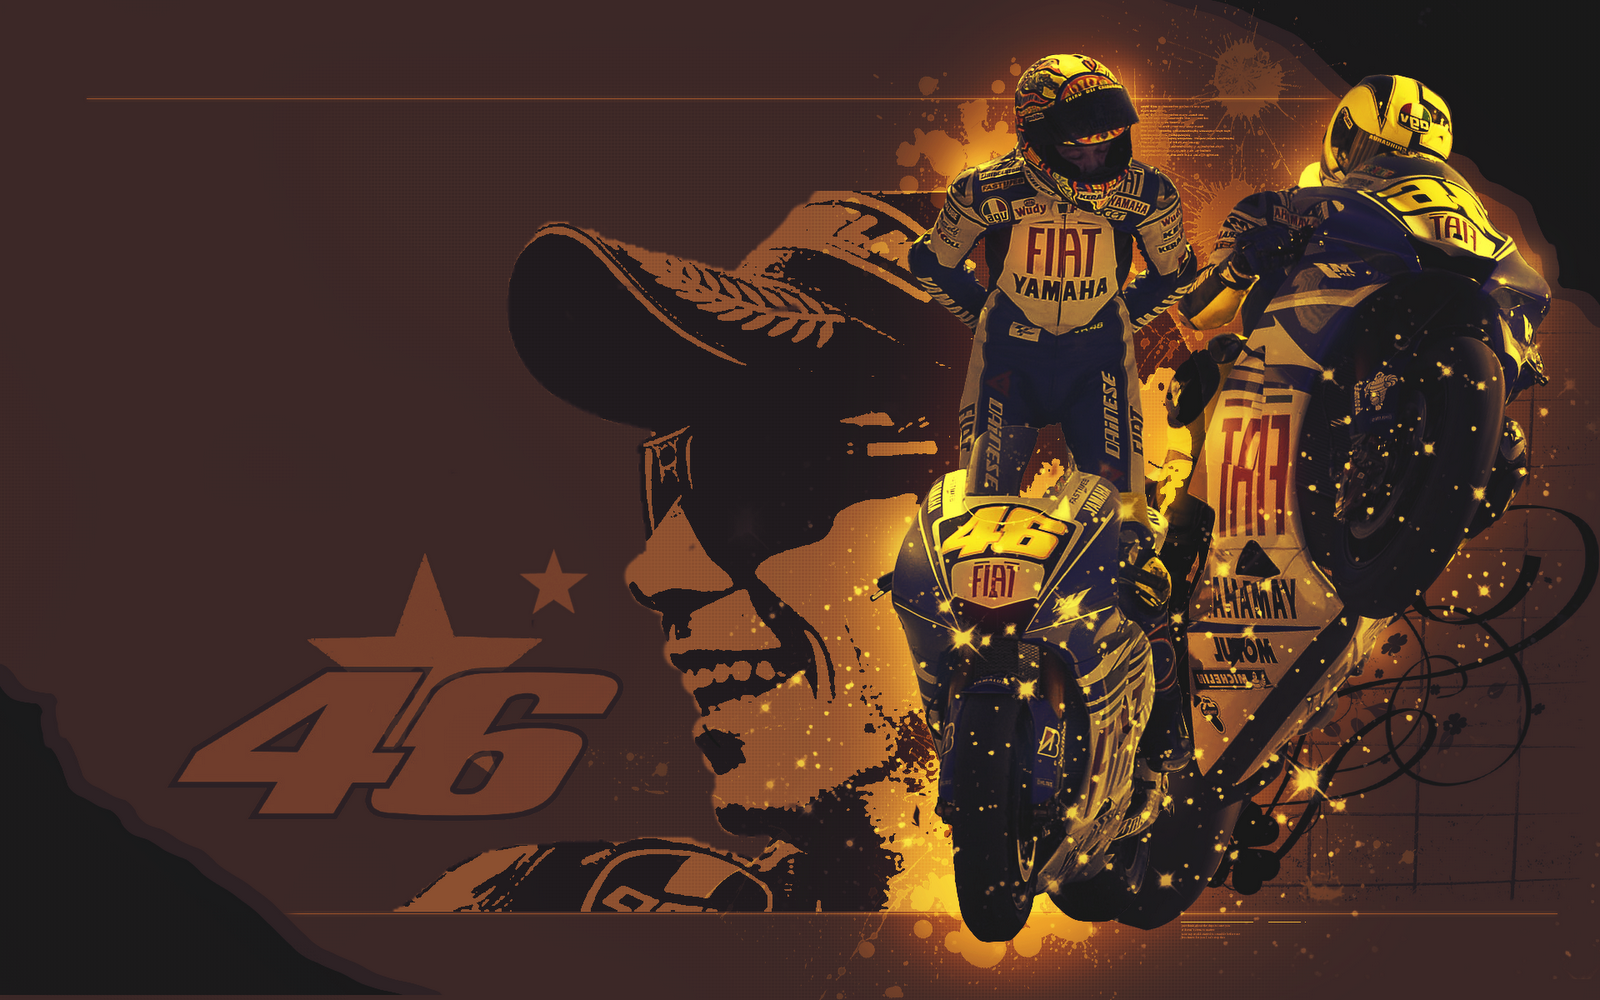 Moto GP: Valentino Rossi Wallpaper New for Dekstop | Dekstop Wallpaper ...